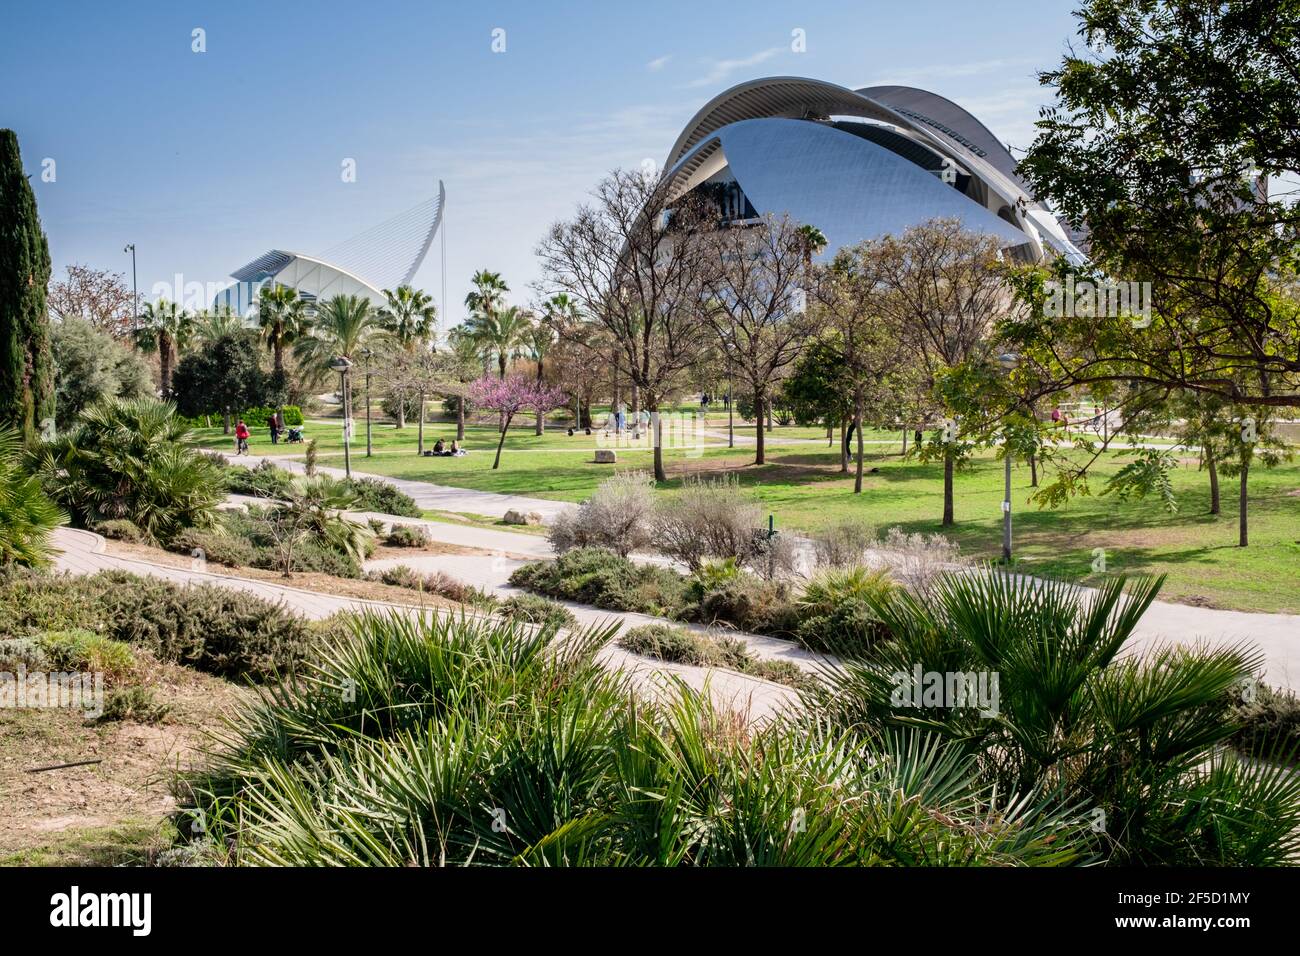 Valencia, Spagna: Una vista parziale del Jardí del Túria (giardini Turia), un parco pubblico con piste ciclabili, sentieri e impianti sportivi. Foto Stock